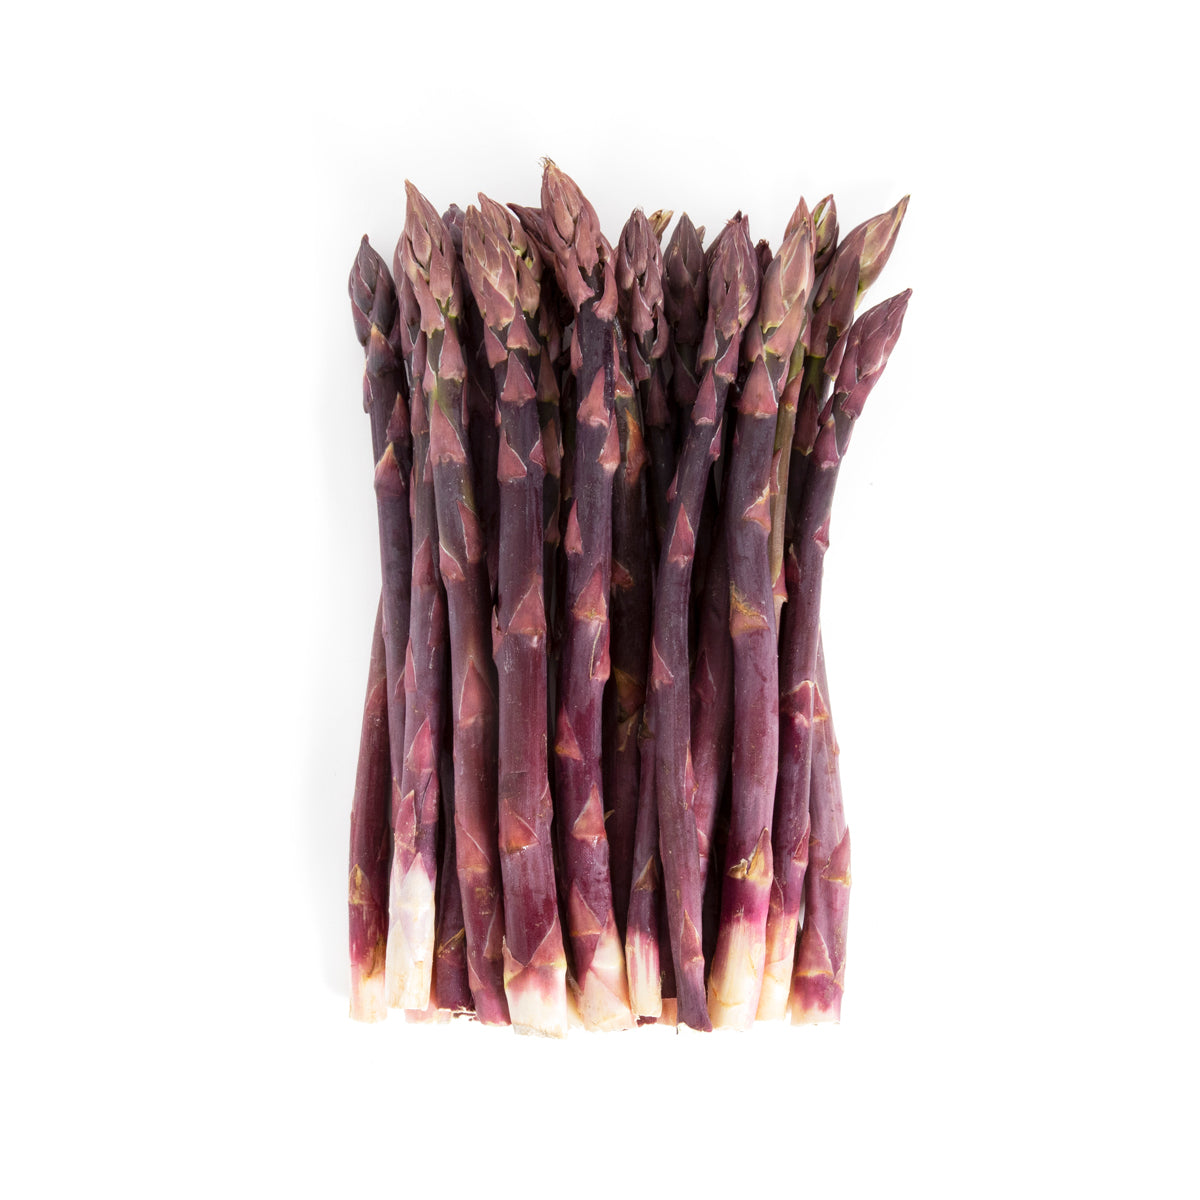 BoxNCase Purple Asparagus 11 lb